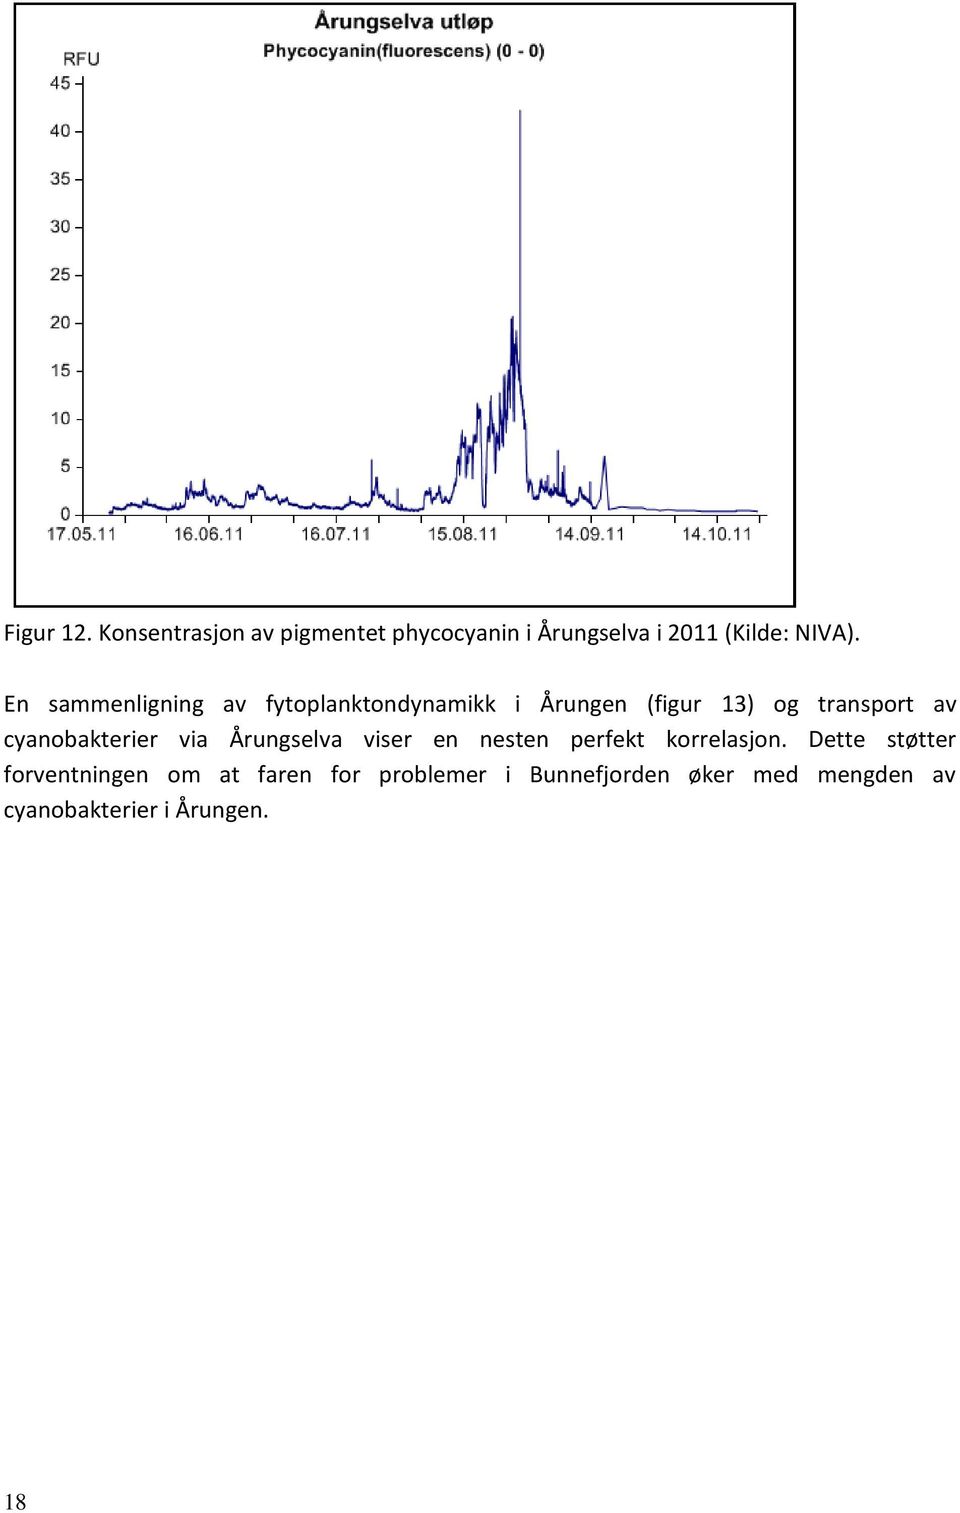 cyanobakterier via Årungselva viser en nesten perfekt korrelasjon.